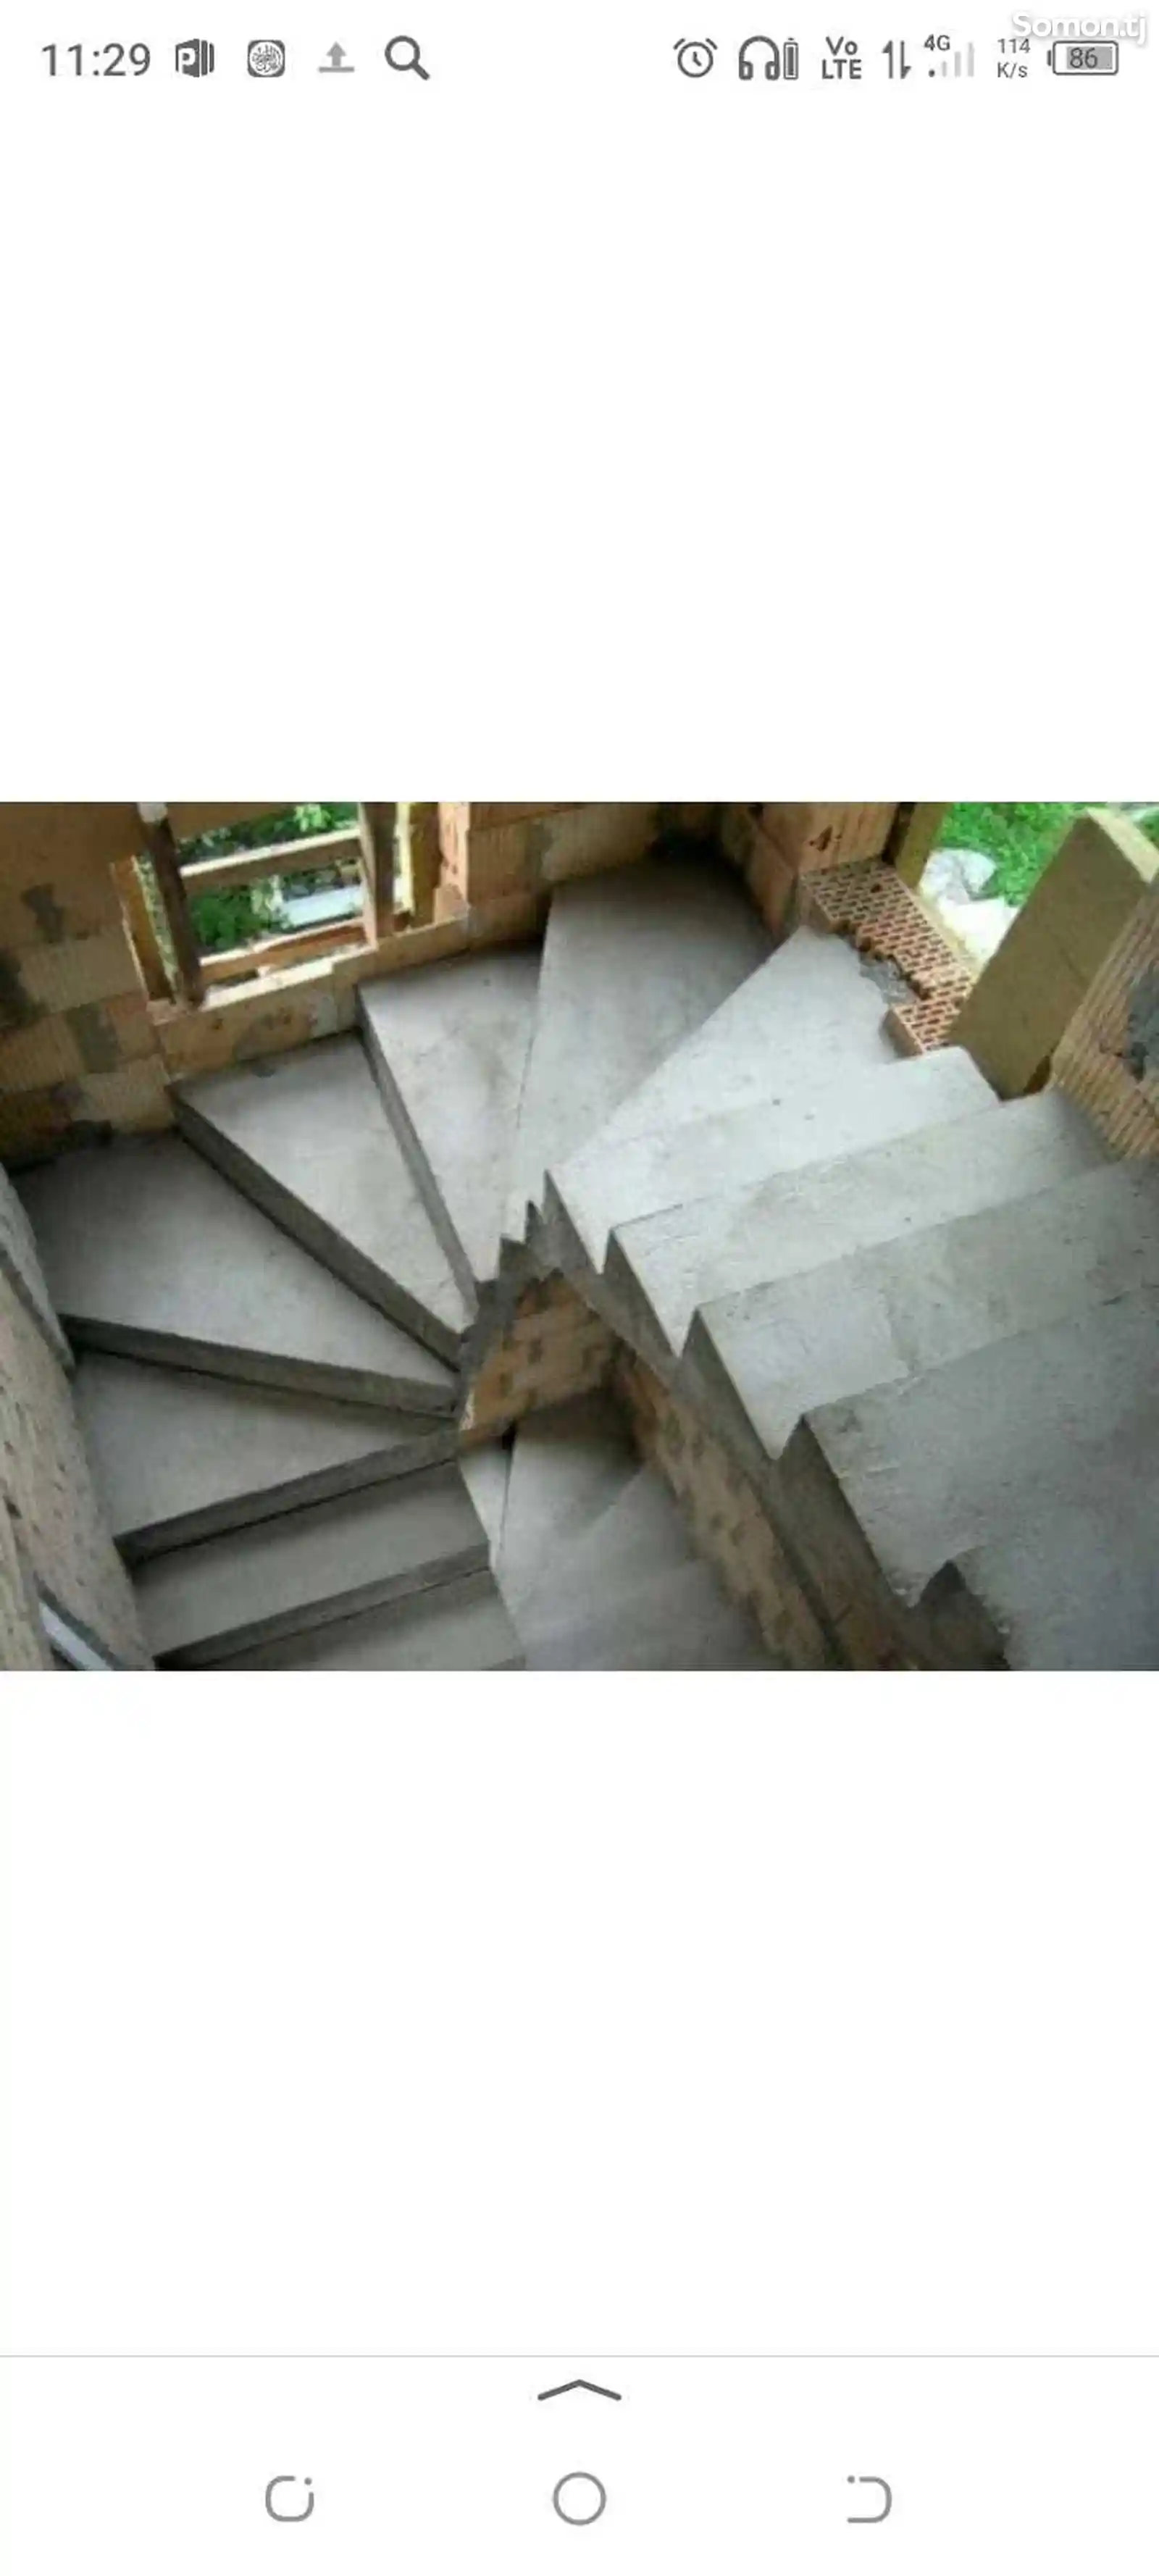 Услуги по строительству лестниц-5